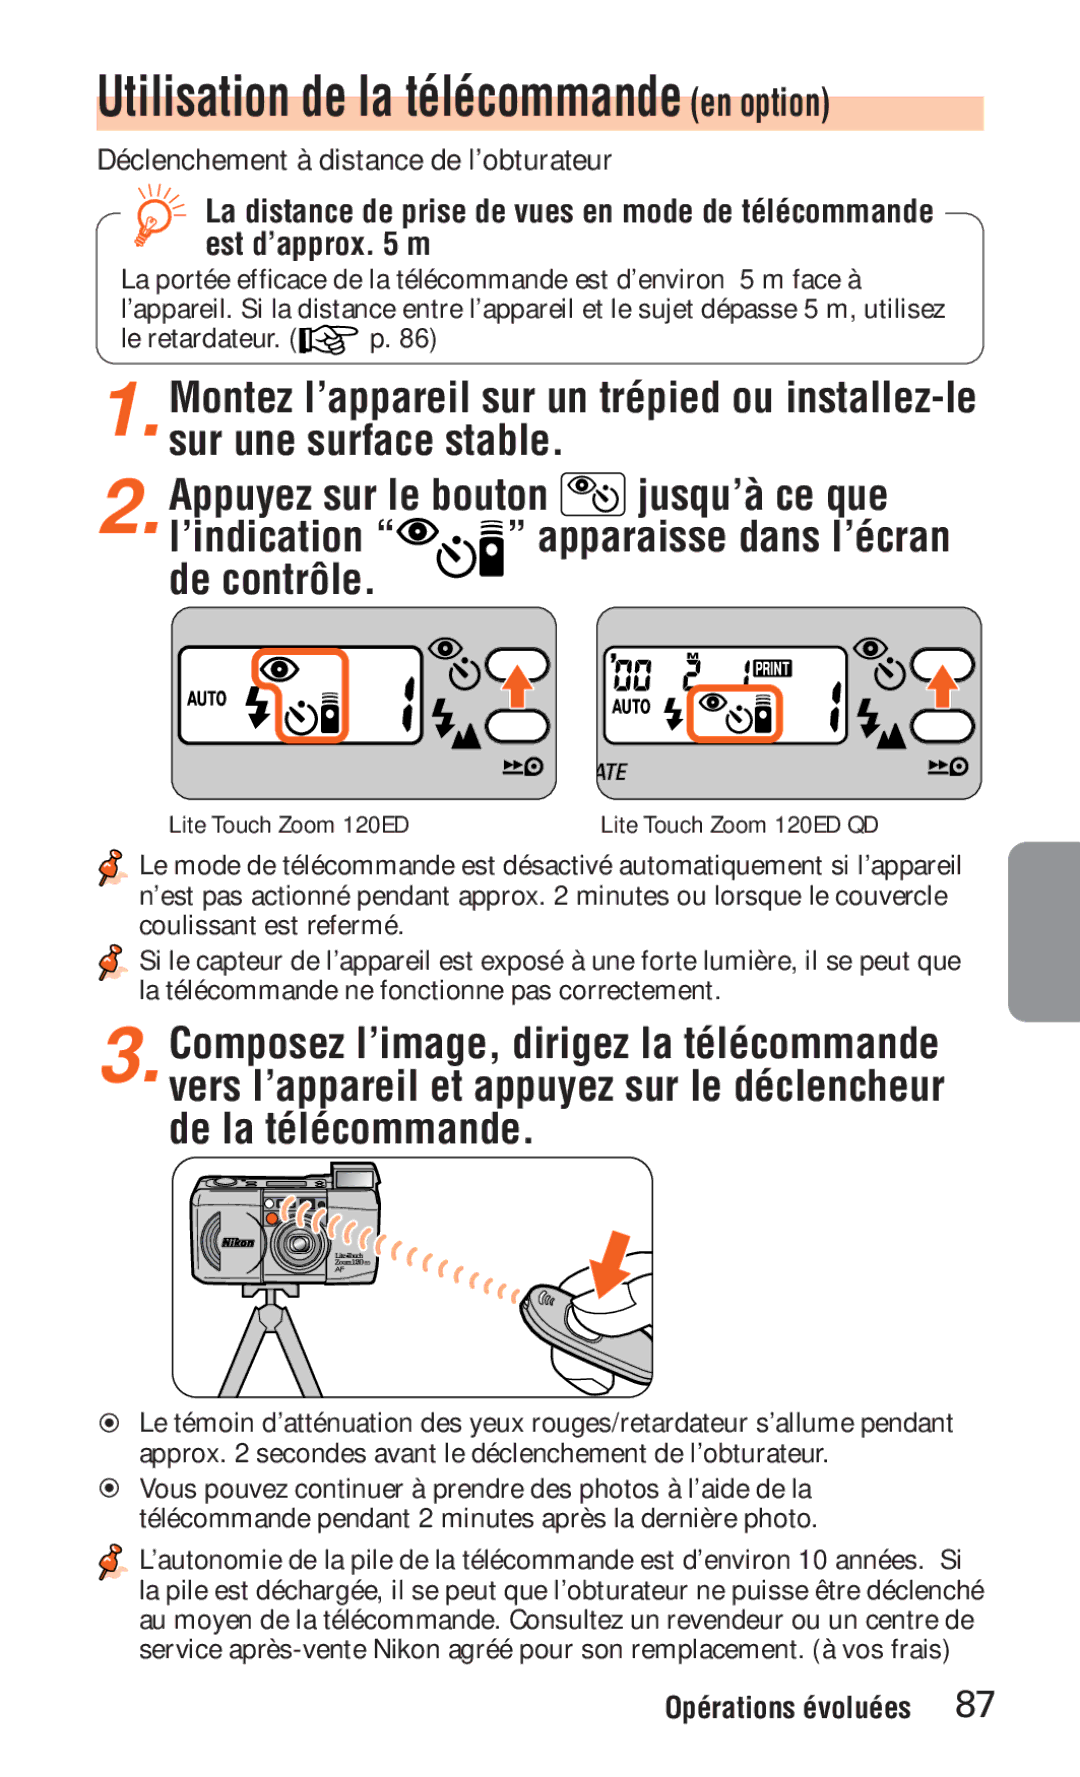 Nikon ED 120 instruction manual Utilisation de la télécommande en option 